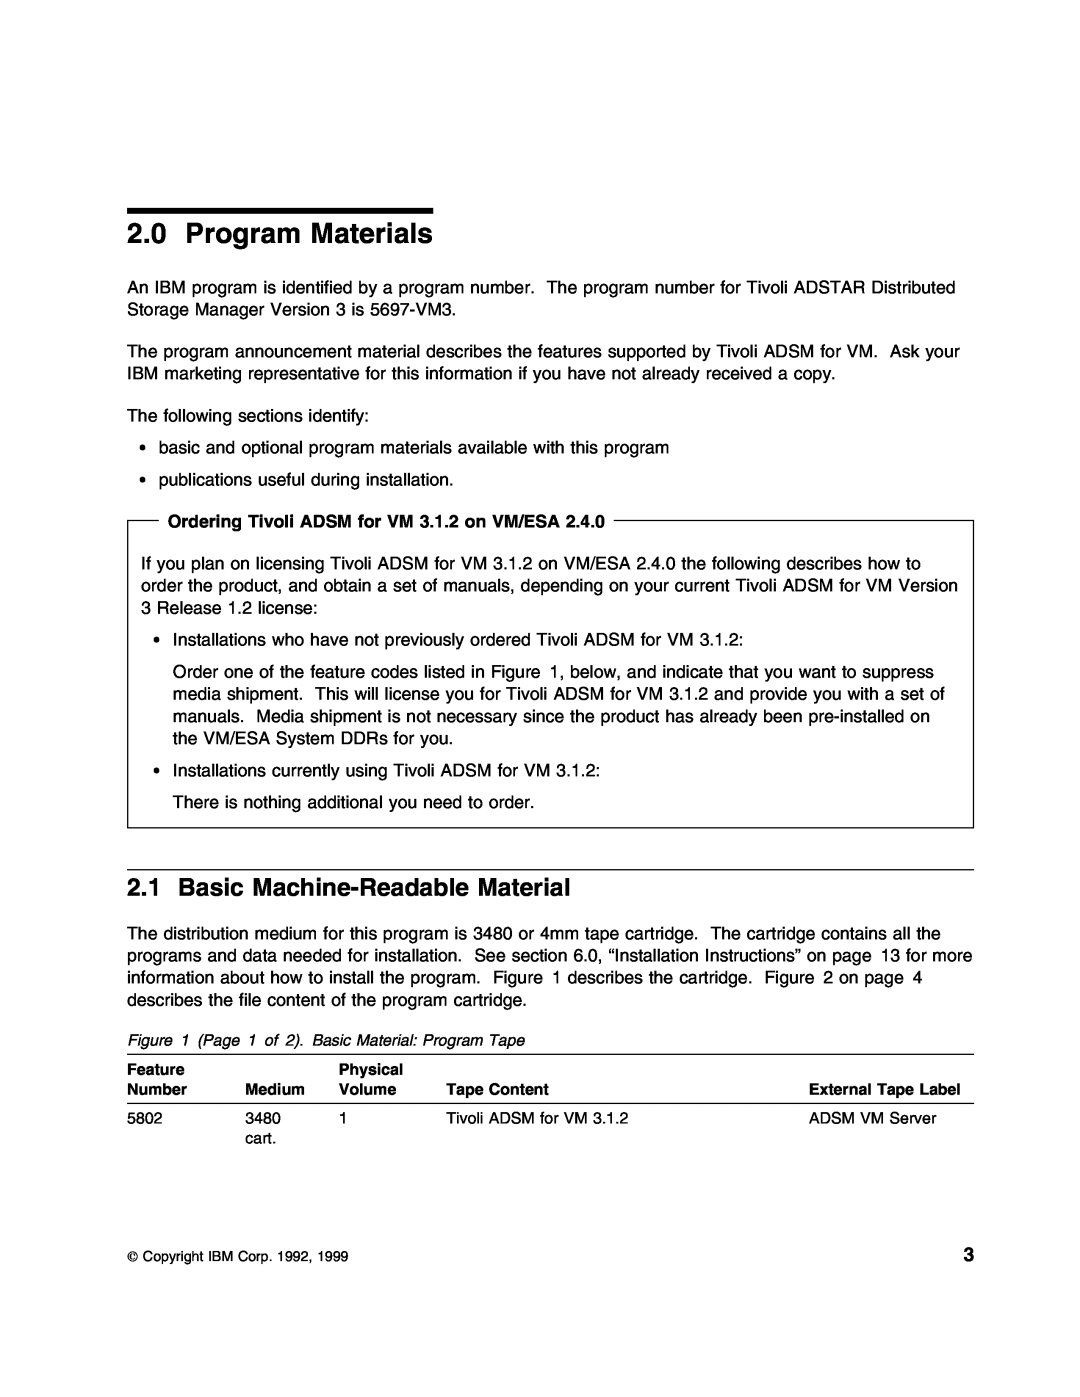 IBM 5697-VM3 manual Program Materials, Basic Machine-Readable Material, Ordering Tivoli ADSM for VM 3.1.2 on VM/ESA 